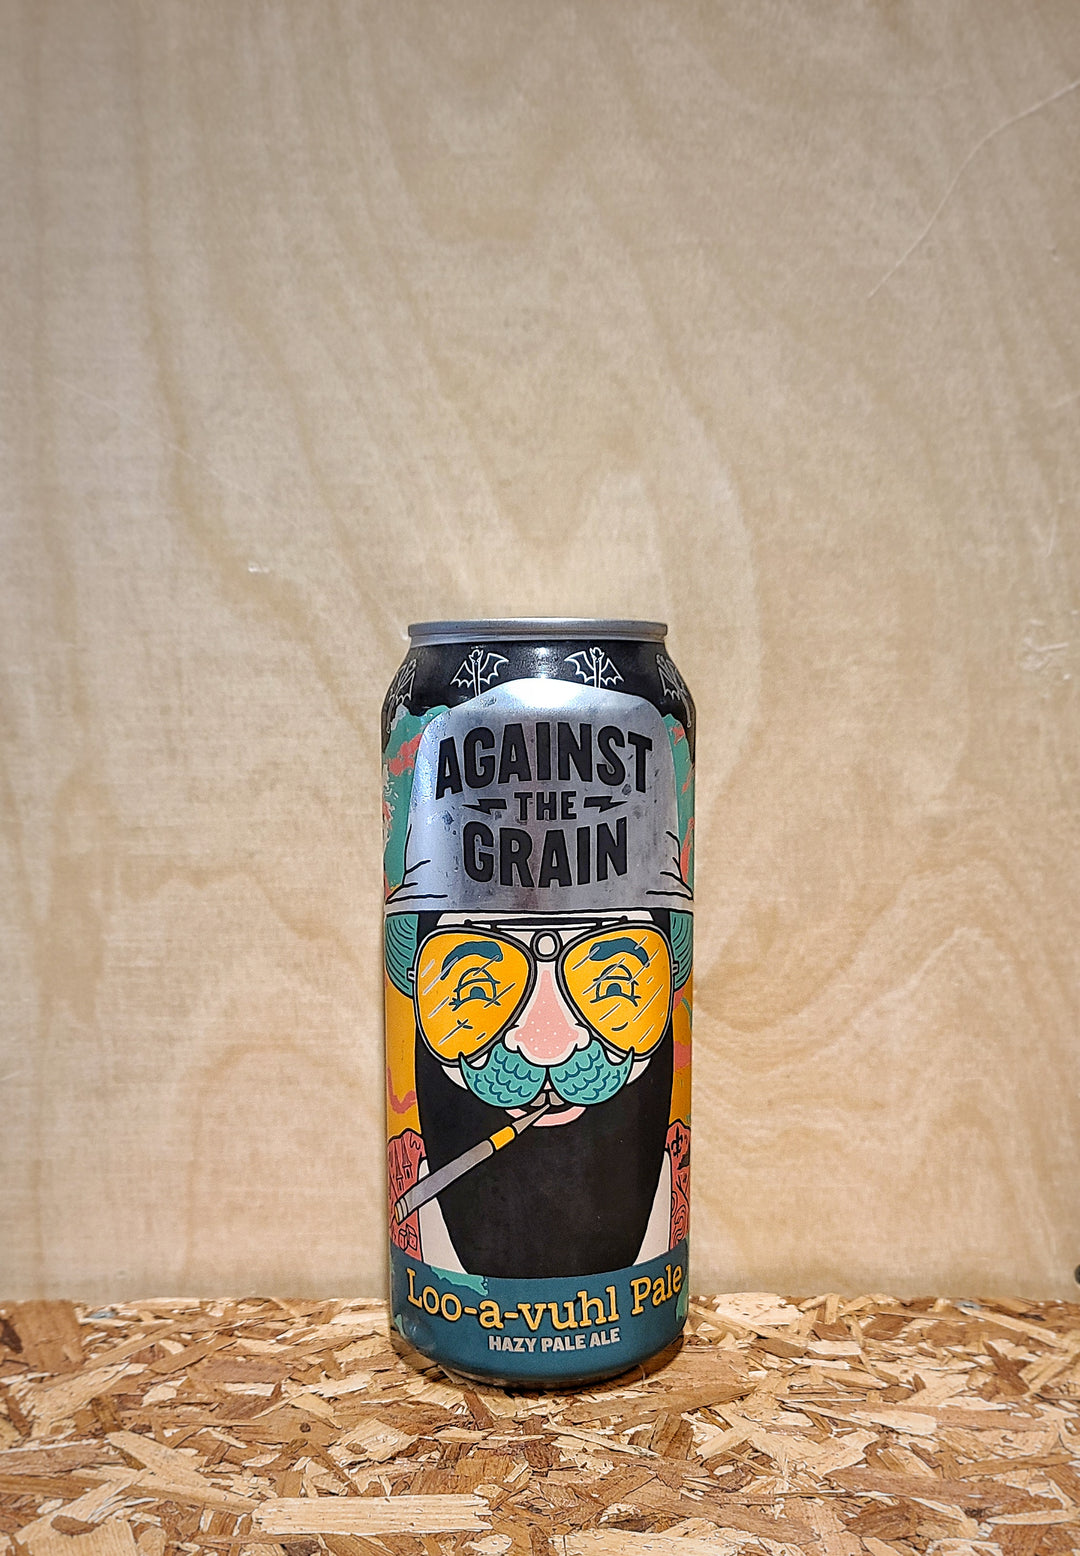 Against the Grain 'Loo-a-vuhl' Hazy Pale Ale (Louisville, KY)